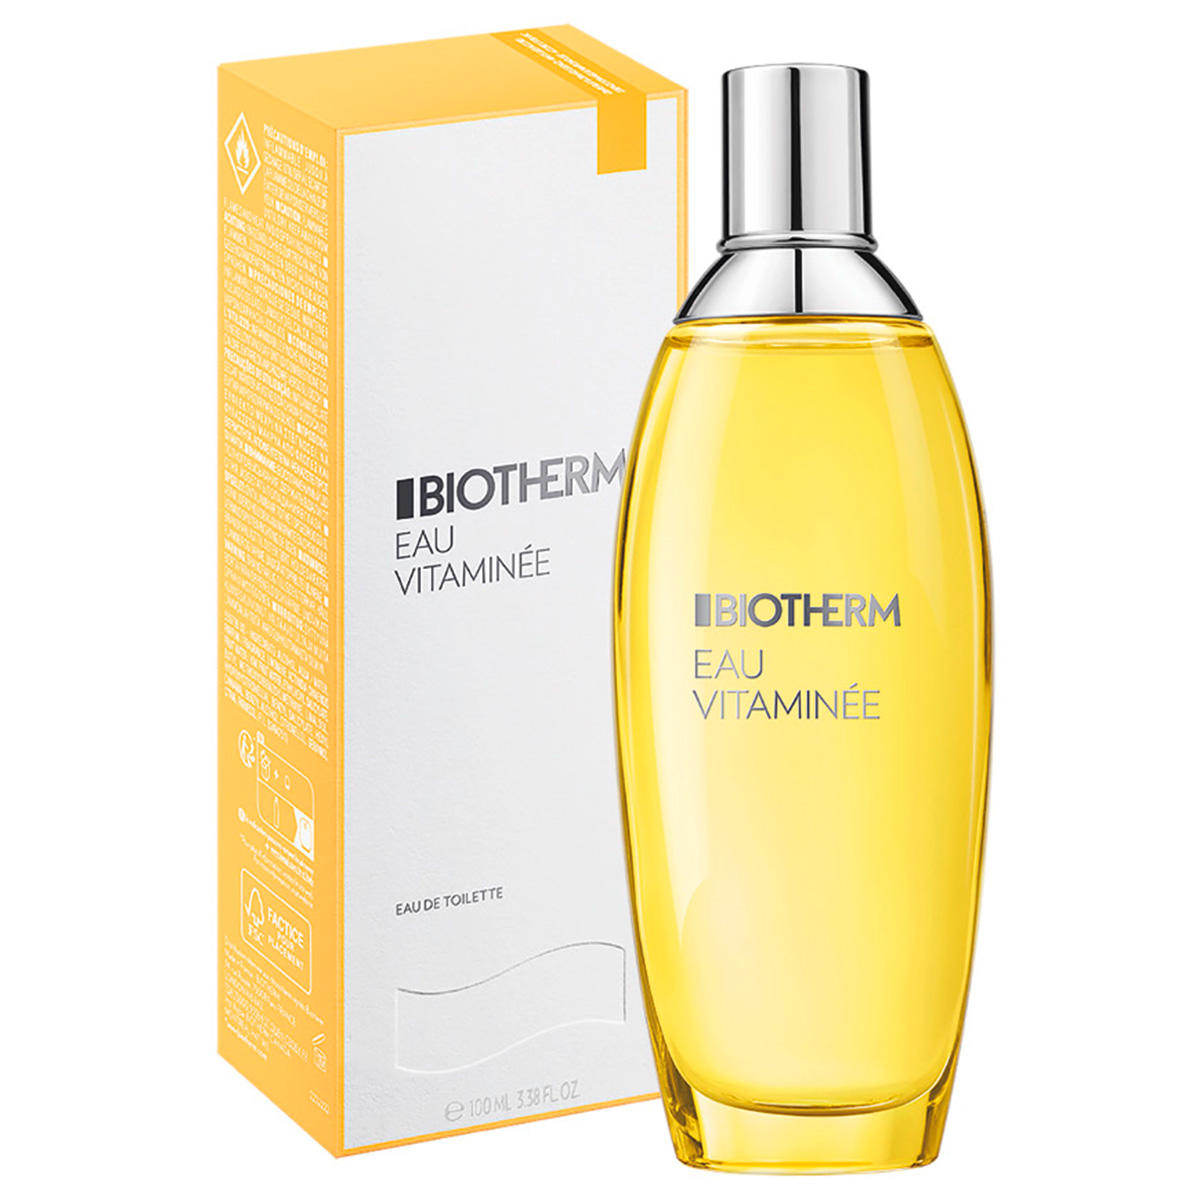 Biotherm Eau Parfum corporel vitaminé 100 ml - 1